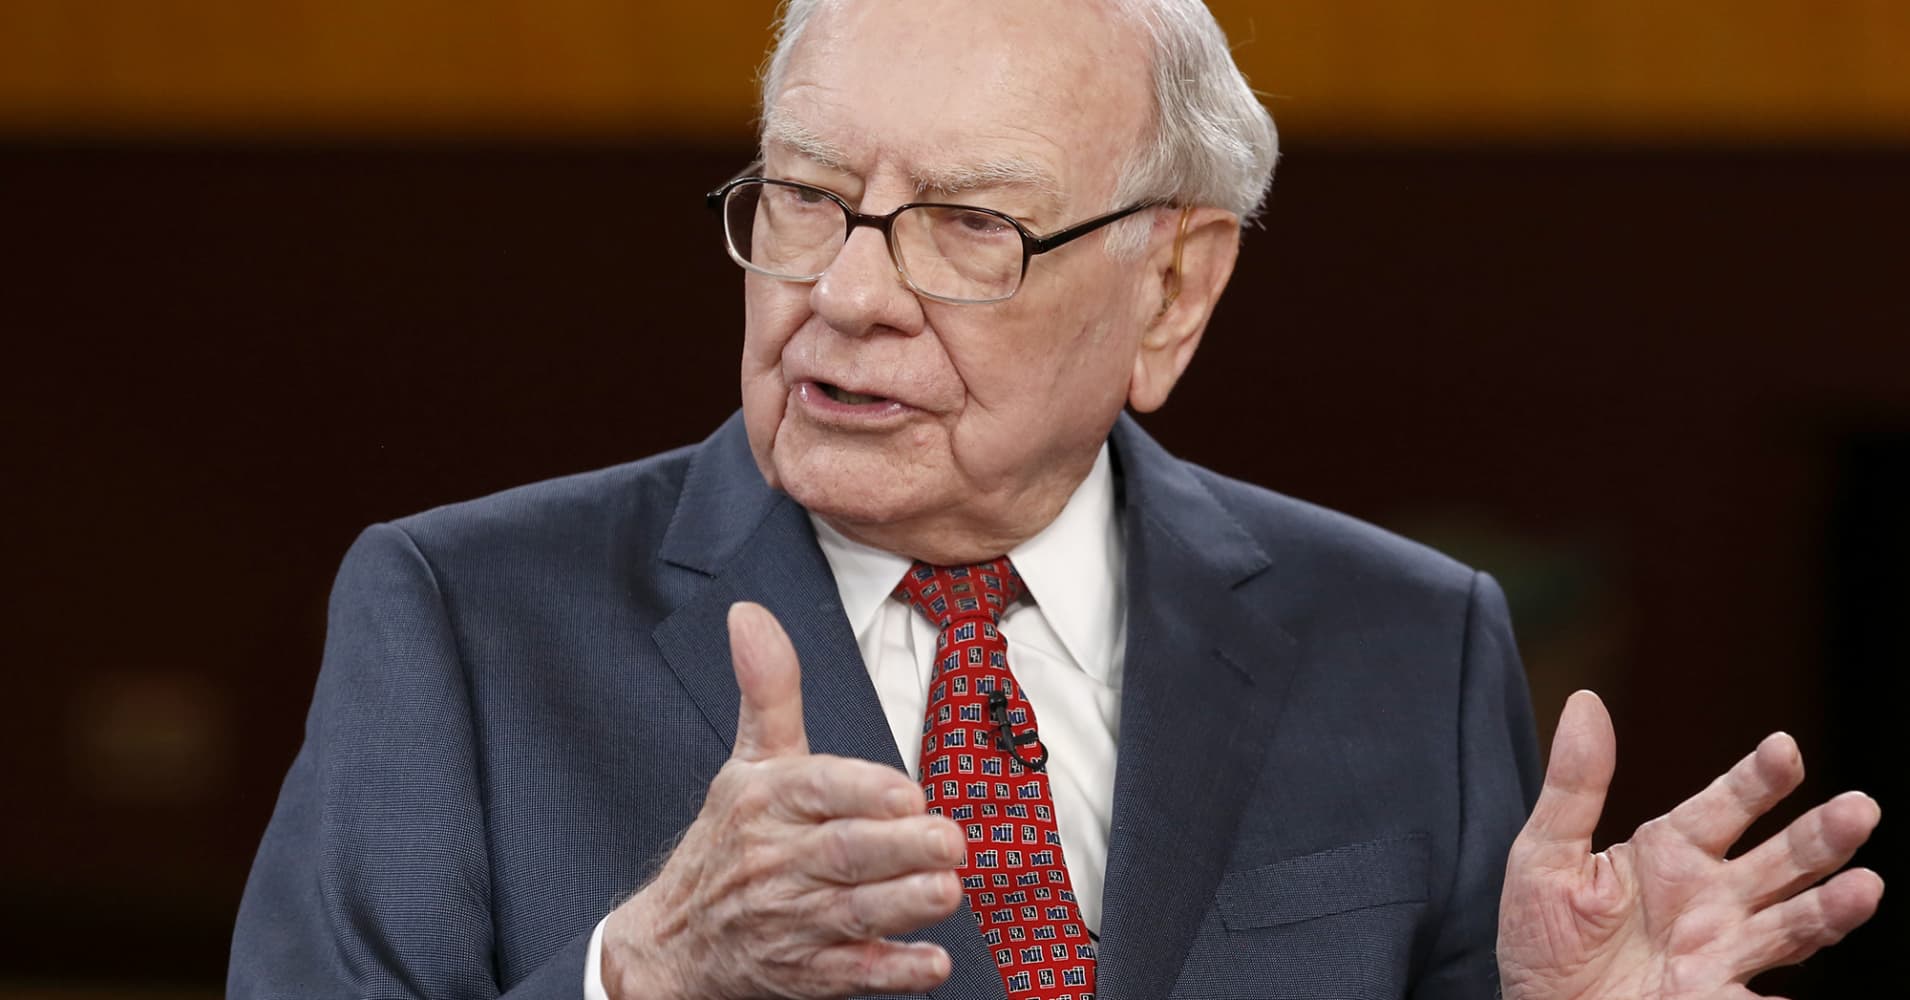 Warren Buffett: Revealing how much top execs earn isn't a good idea